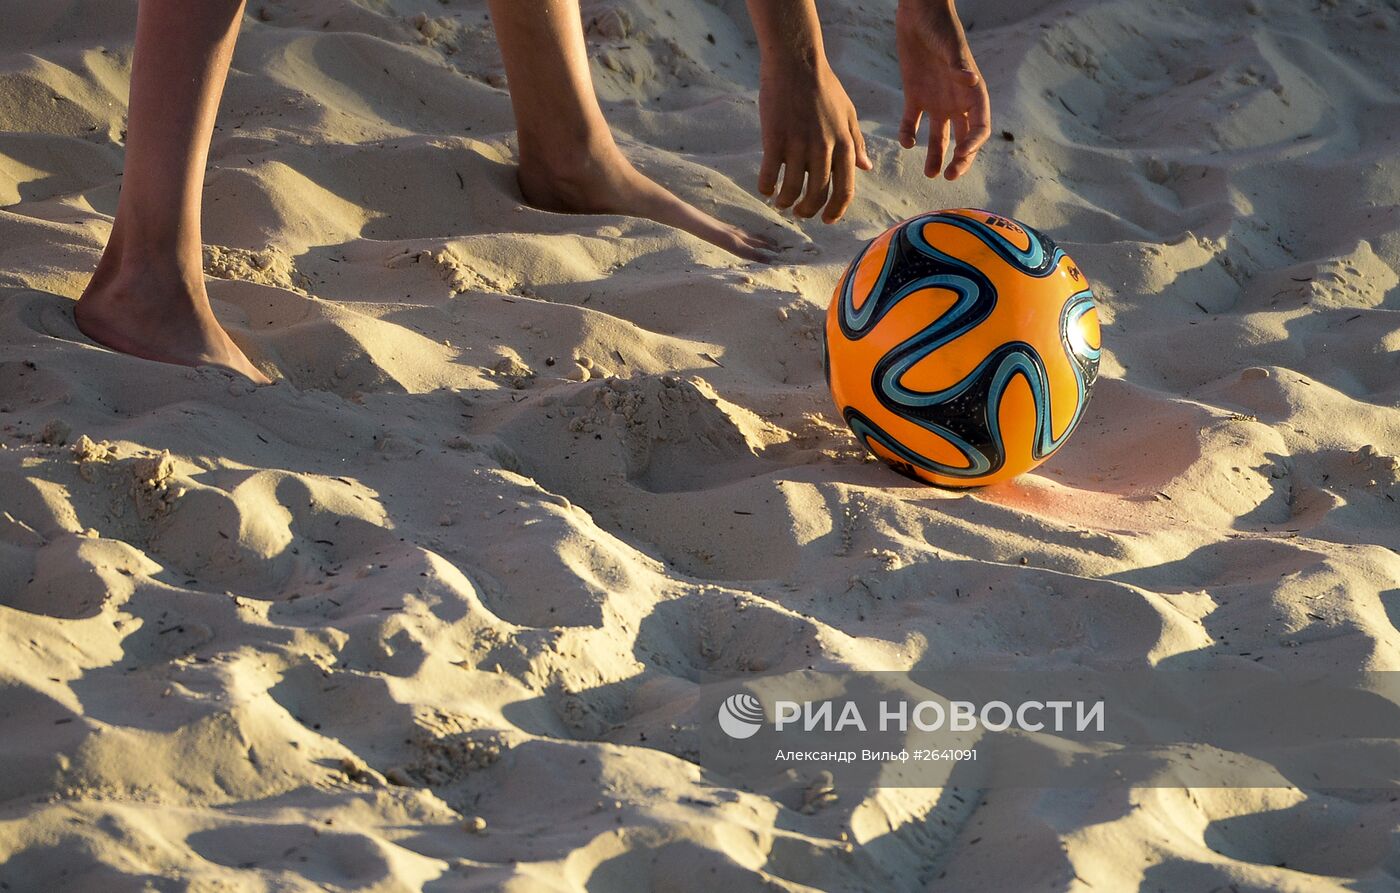 Пляжный футбол. Этап Евролиги. Матч Россия - Польша